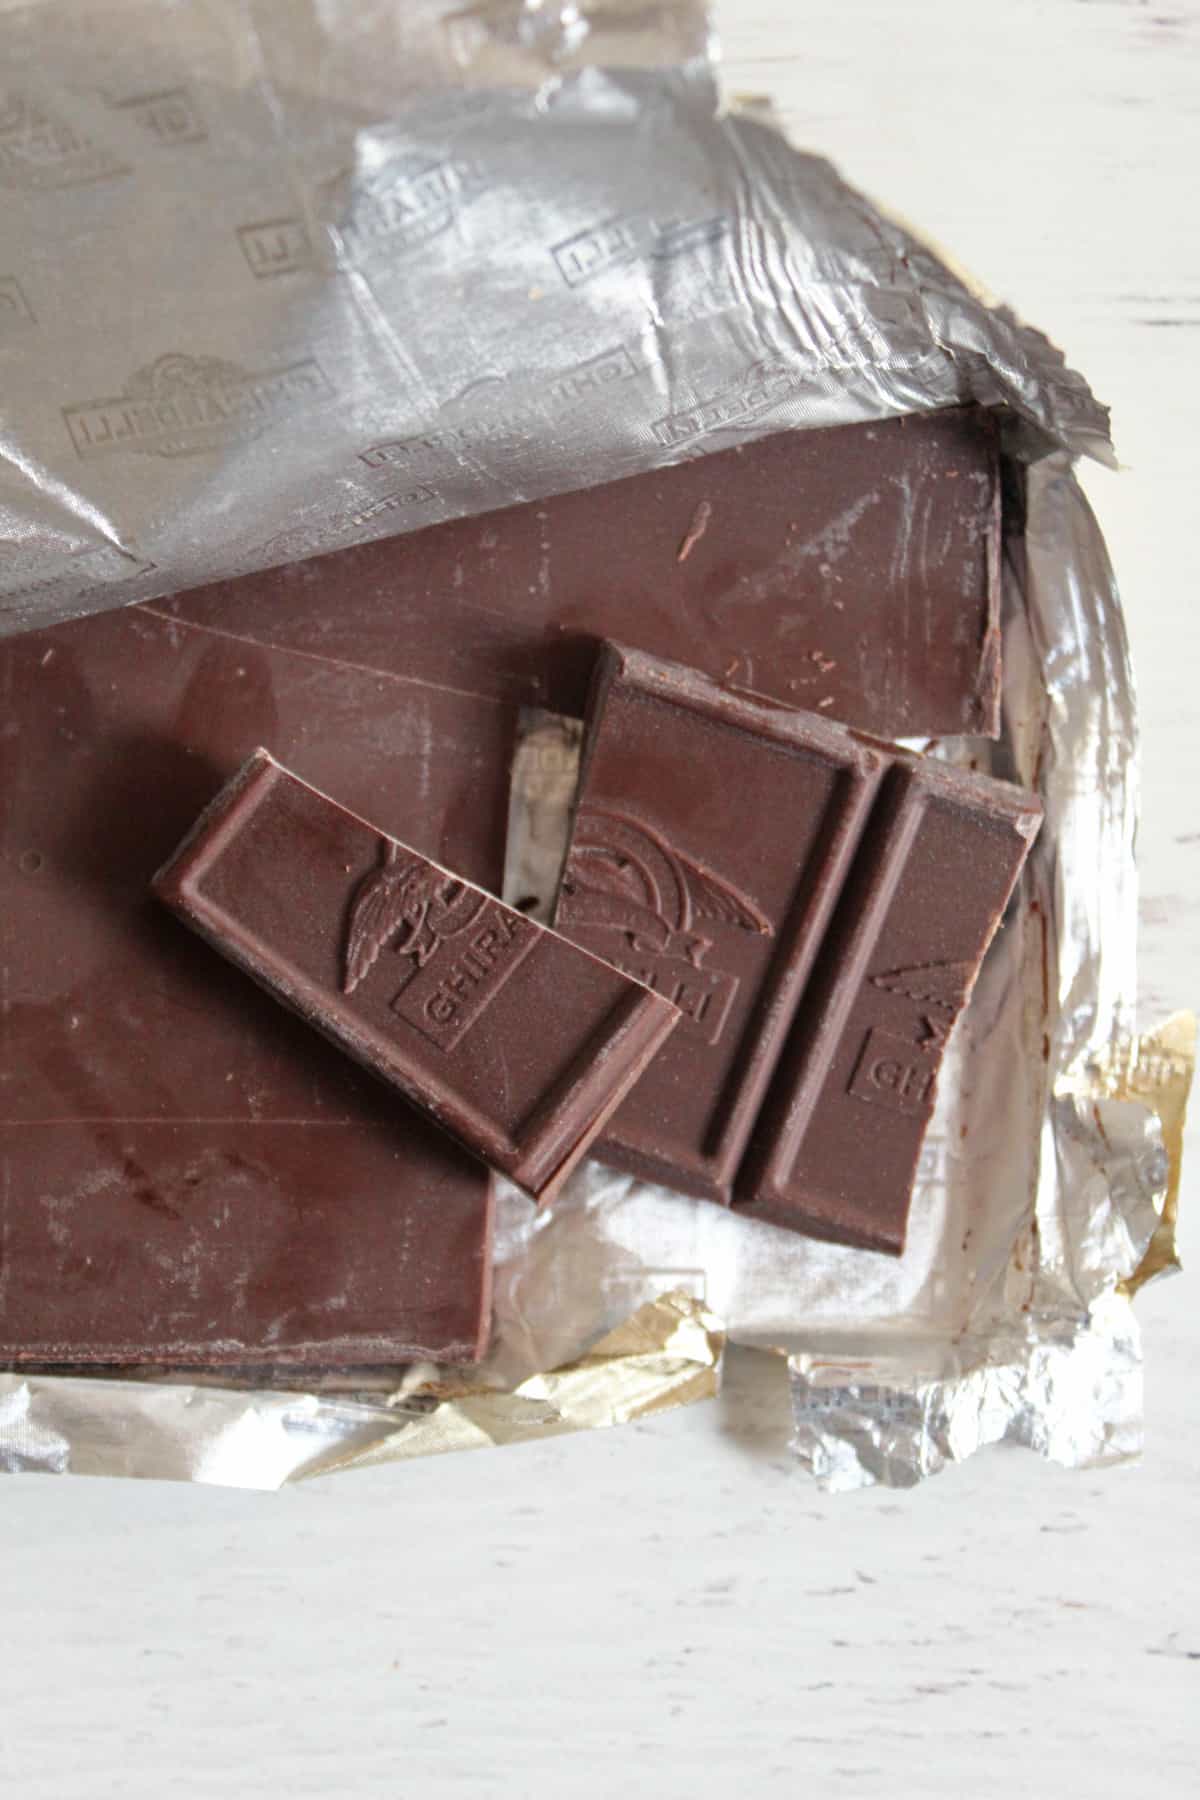 broken pieces of bittersweet chocolate bar